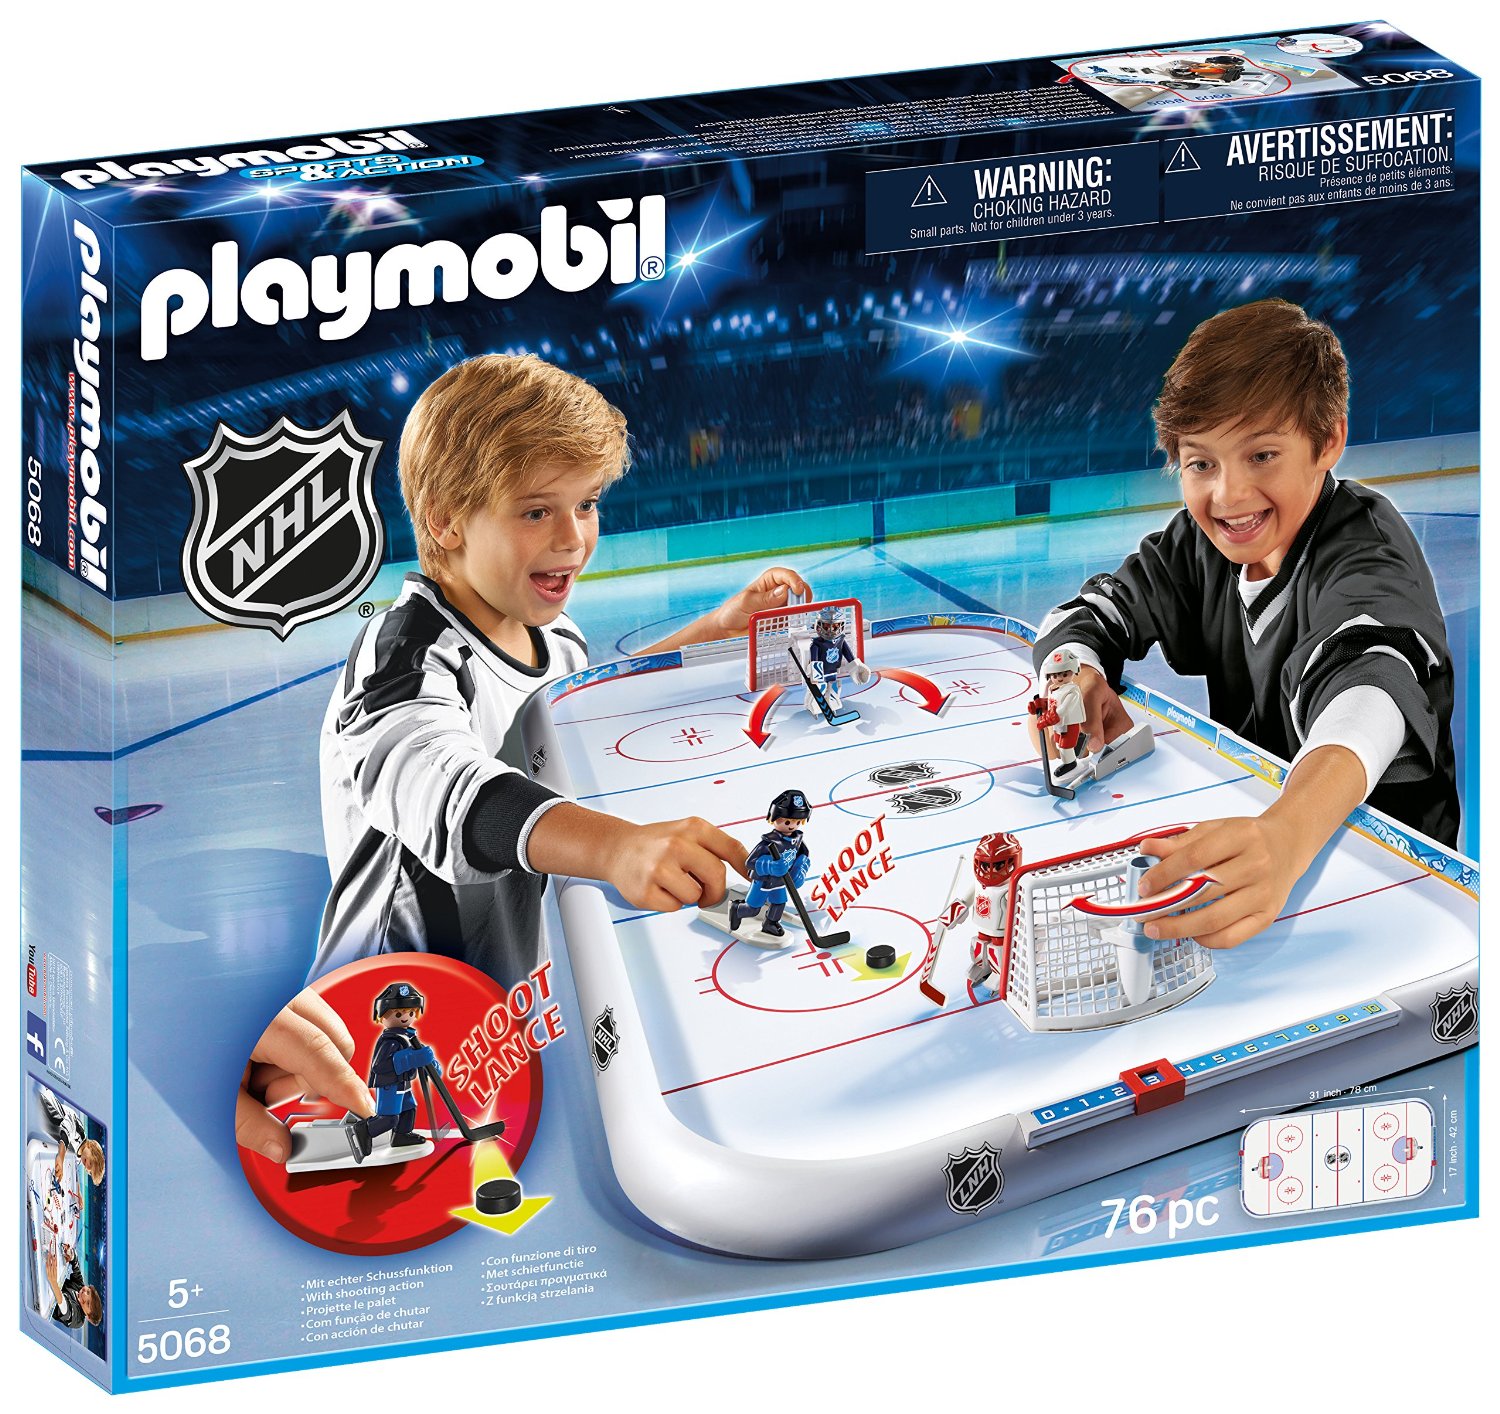 NHL Playmobil hockey arena toy